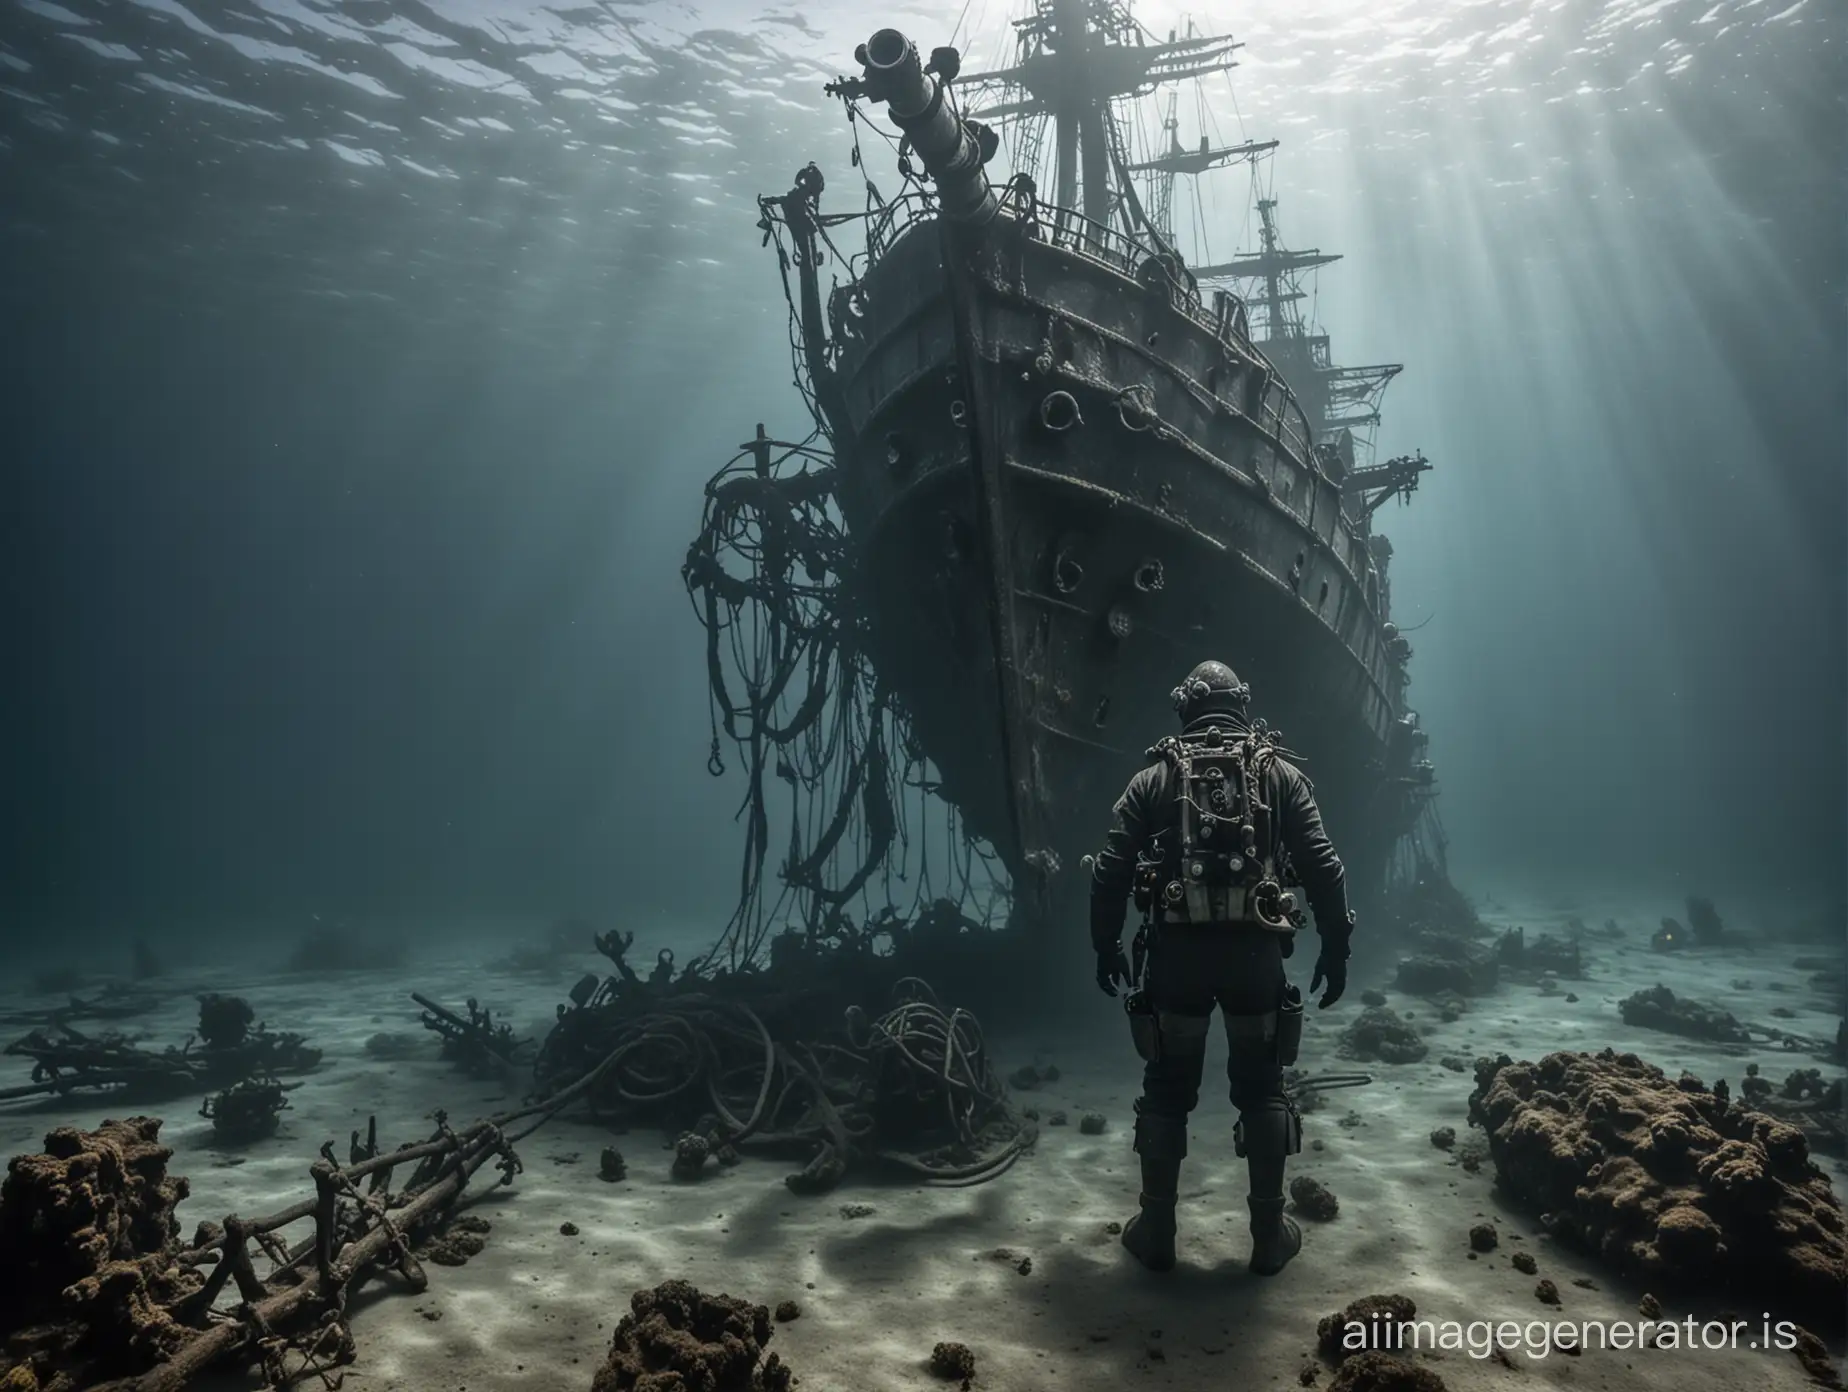 Old-Diver-Explores-Sunken-Frigate-at-Ocean-Depths